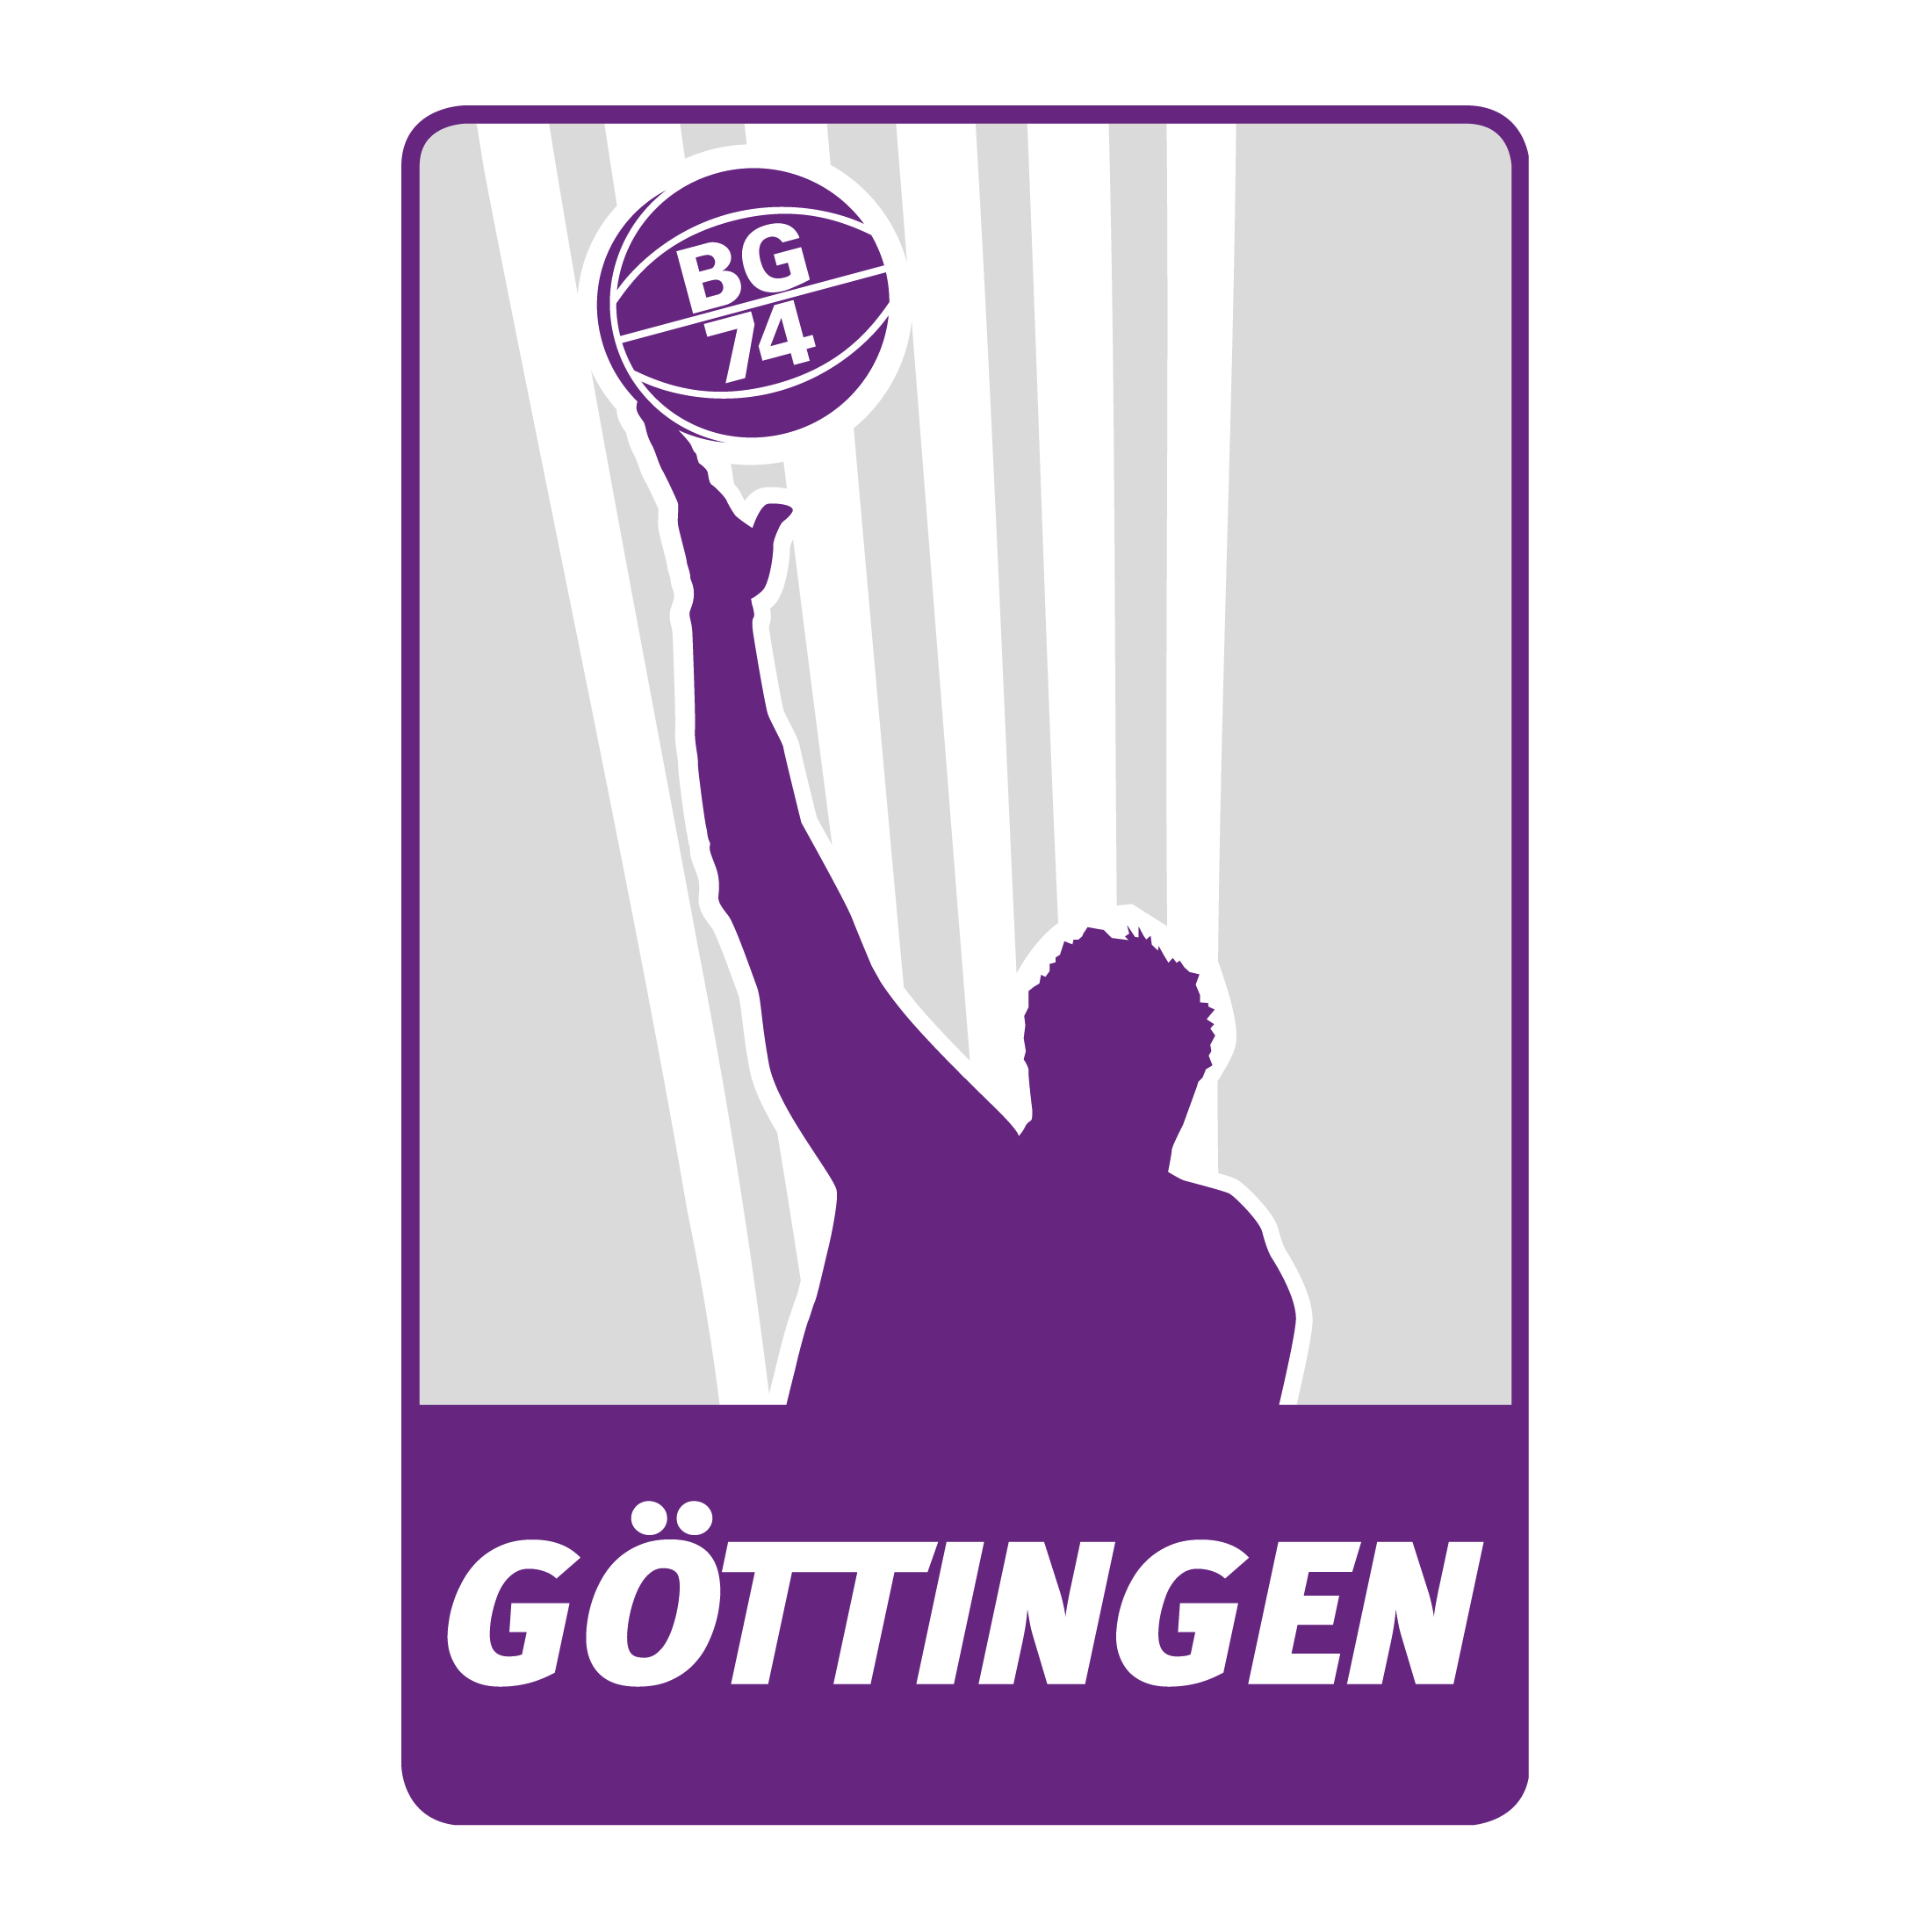 BG 74 Göttingen Logo